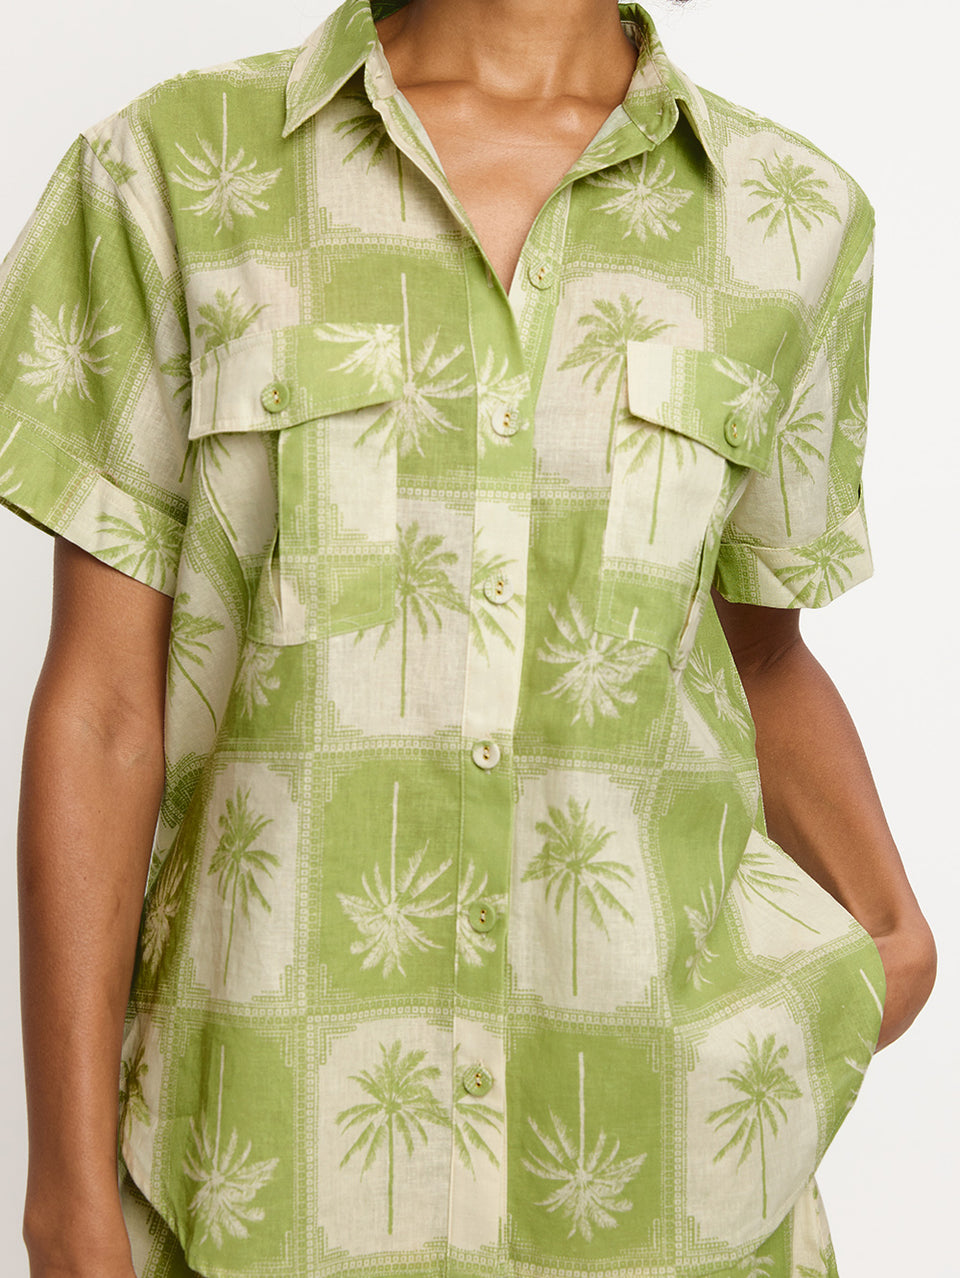 Paradiso Shirt KIVARI | Model wears palm tree printed shirt detail shot